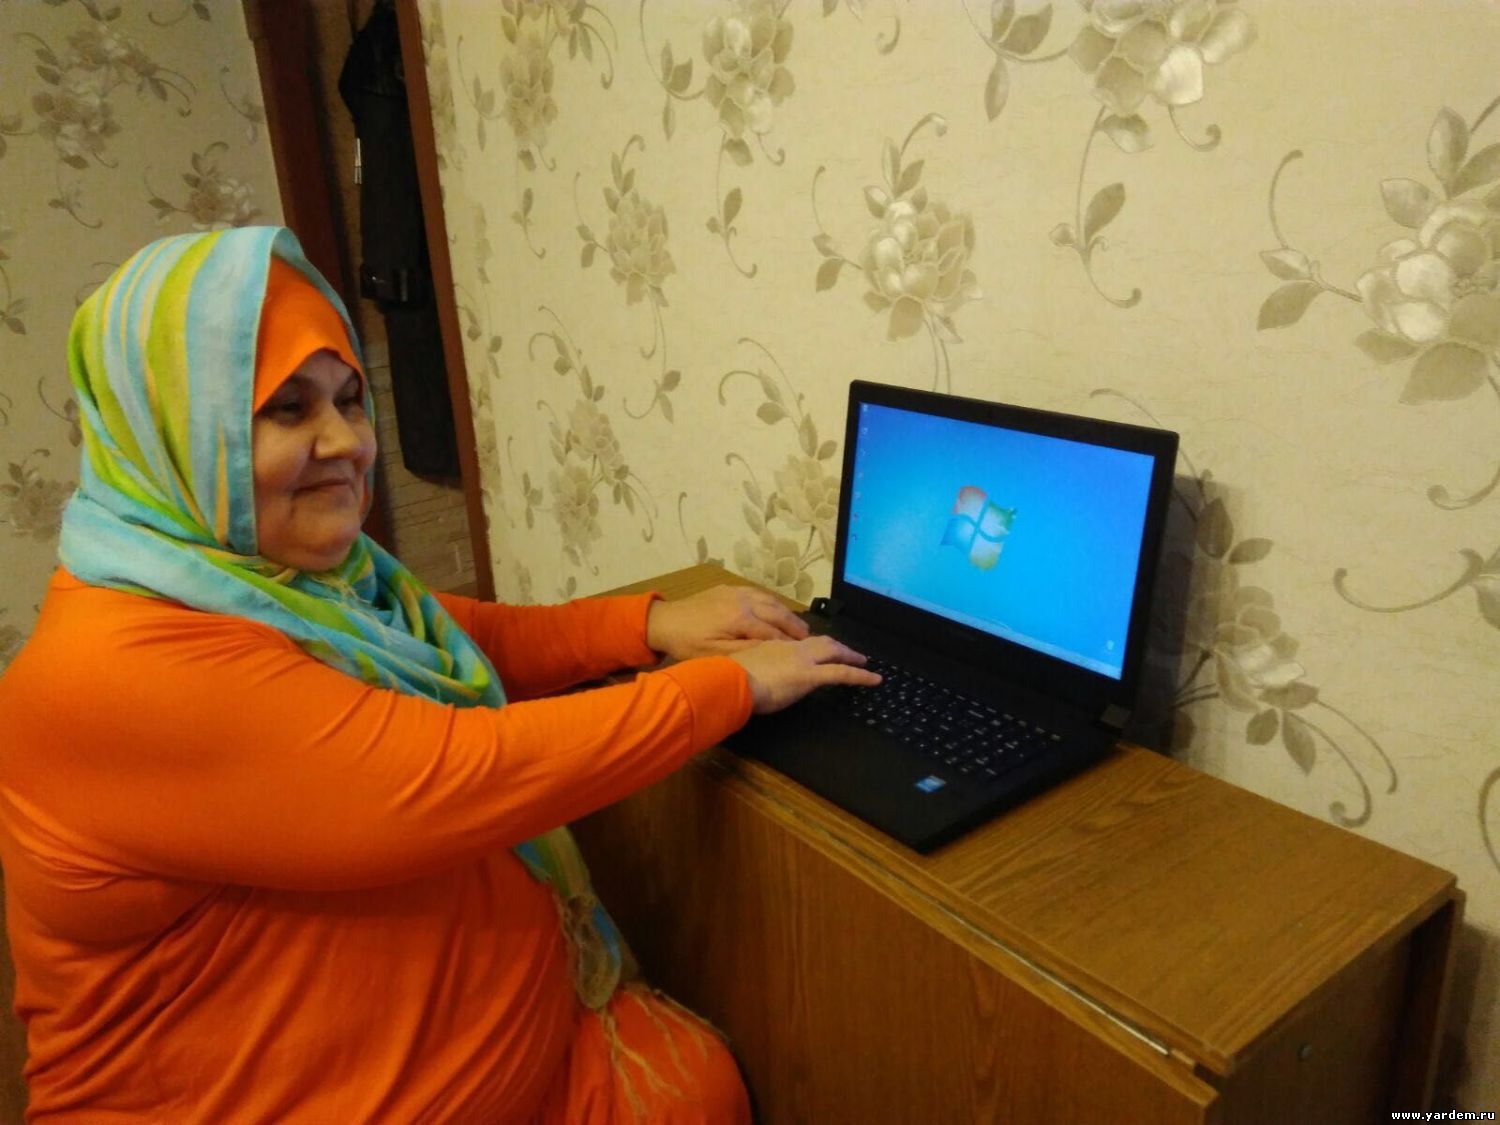 Муфтий Гайнутдин подарил женщине-инвалиду компьютер, оснащенный специальной программой для незрячих. Общие новости